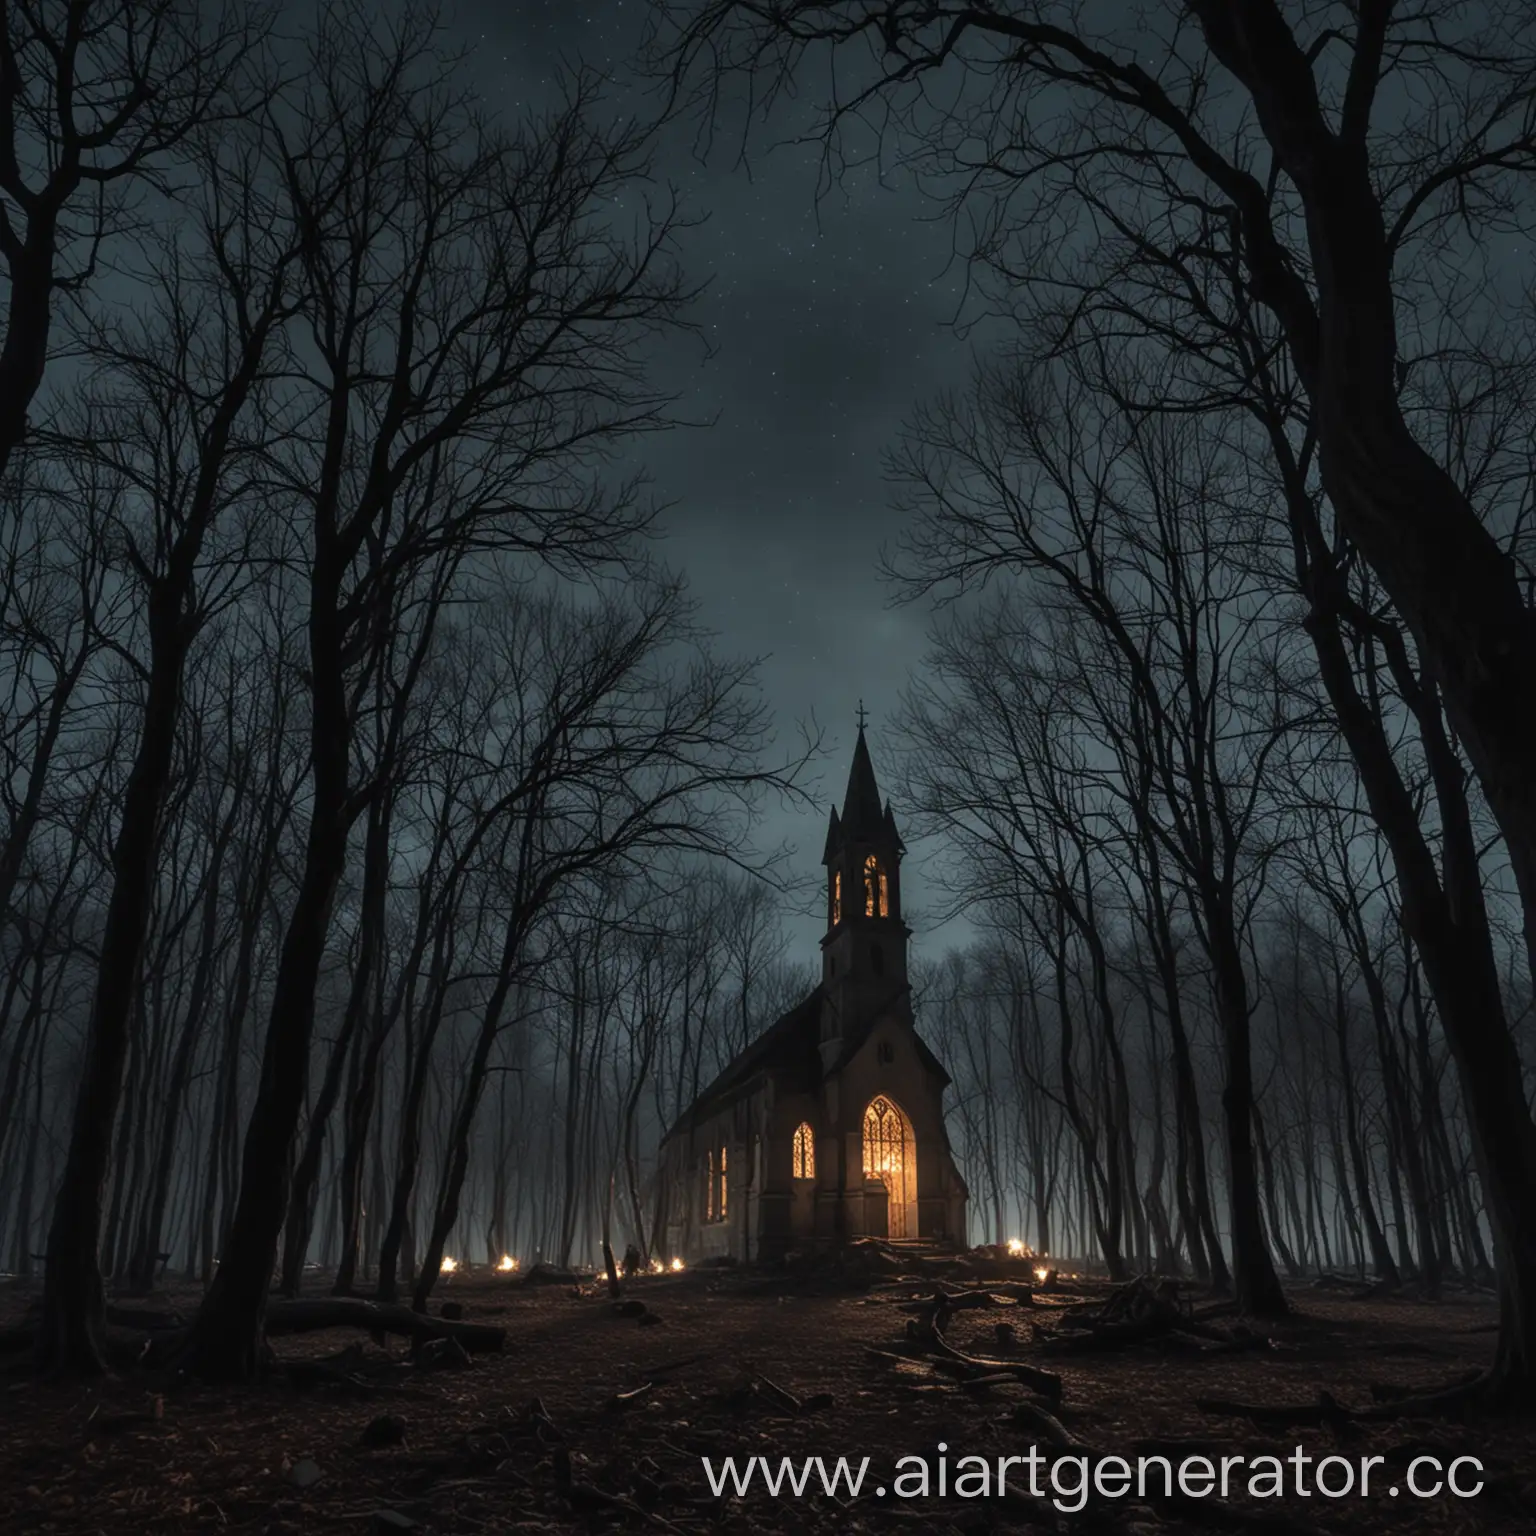 Темная ночь в лесу, давящая атмосфера, ветки голых деревьев закрывают небо, вдали виднеется старая, сгоревшая церковь 